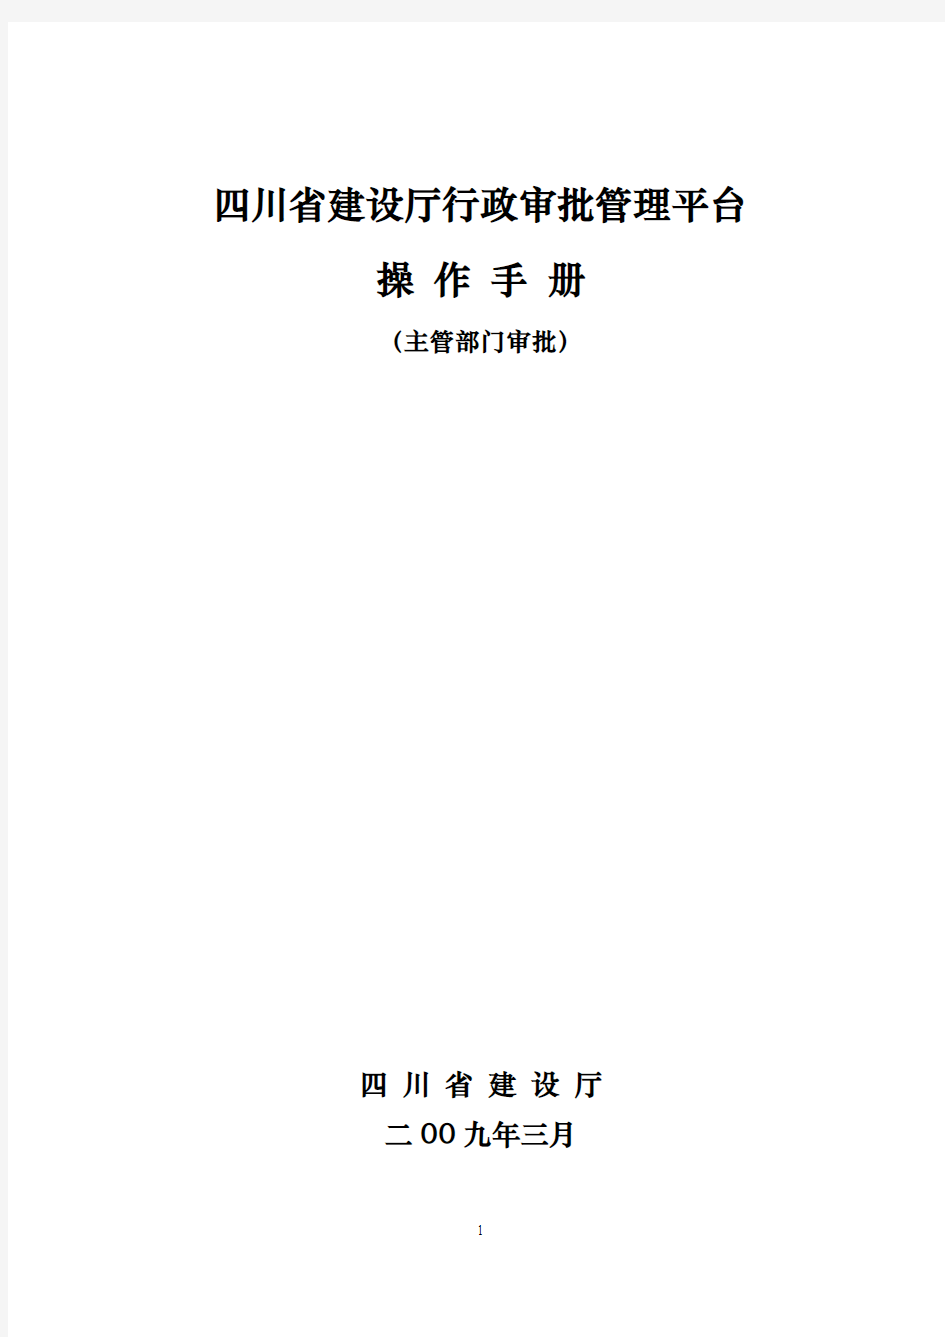 四川省建设厅行政审批系统操作手册(管理部门审批)